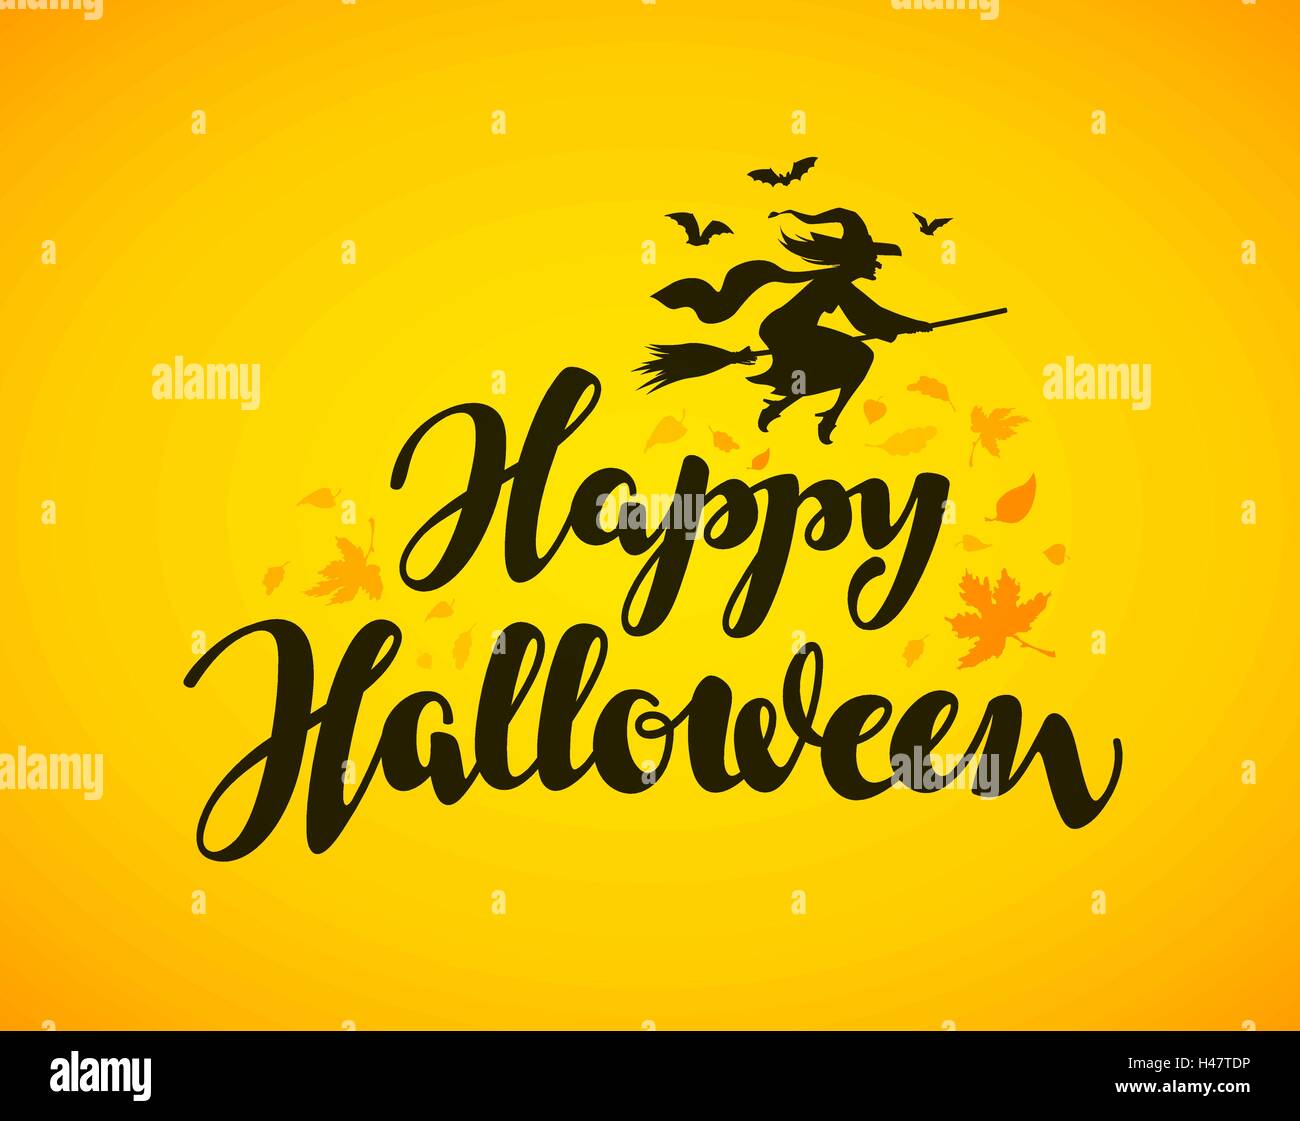 Happy Halloween banner. Disegnata a mano scritte Illustrazione Vettoriale